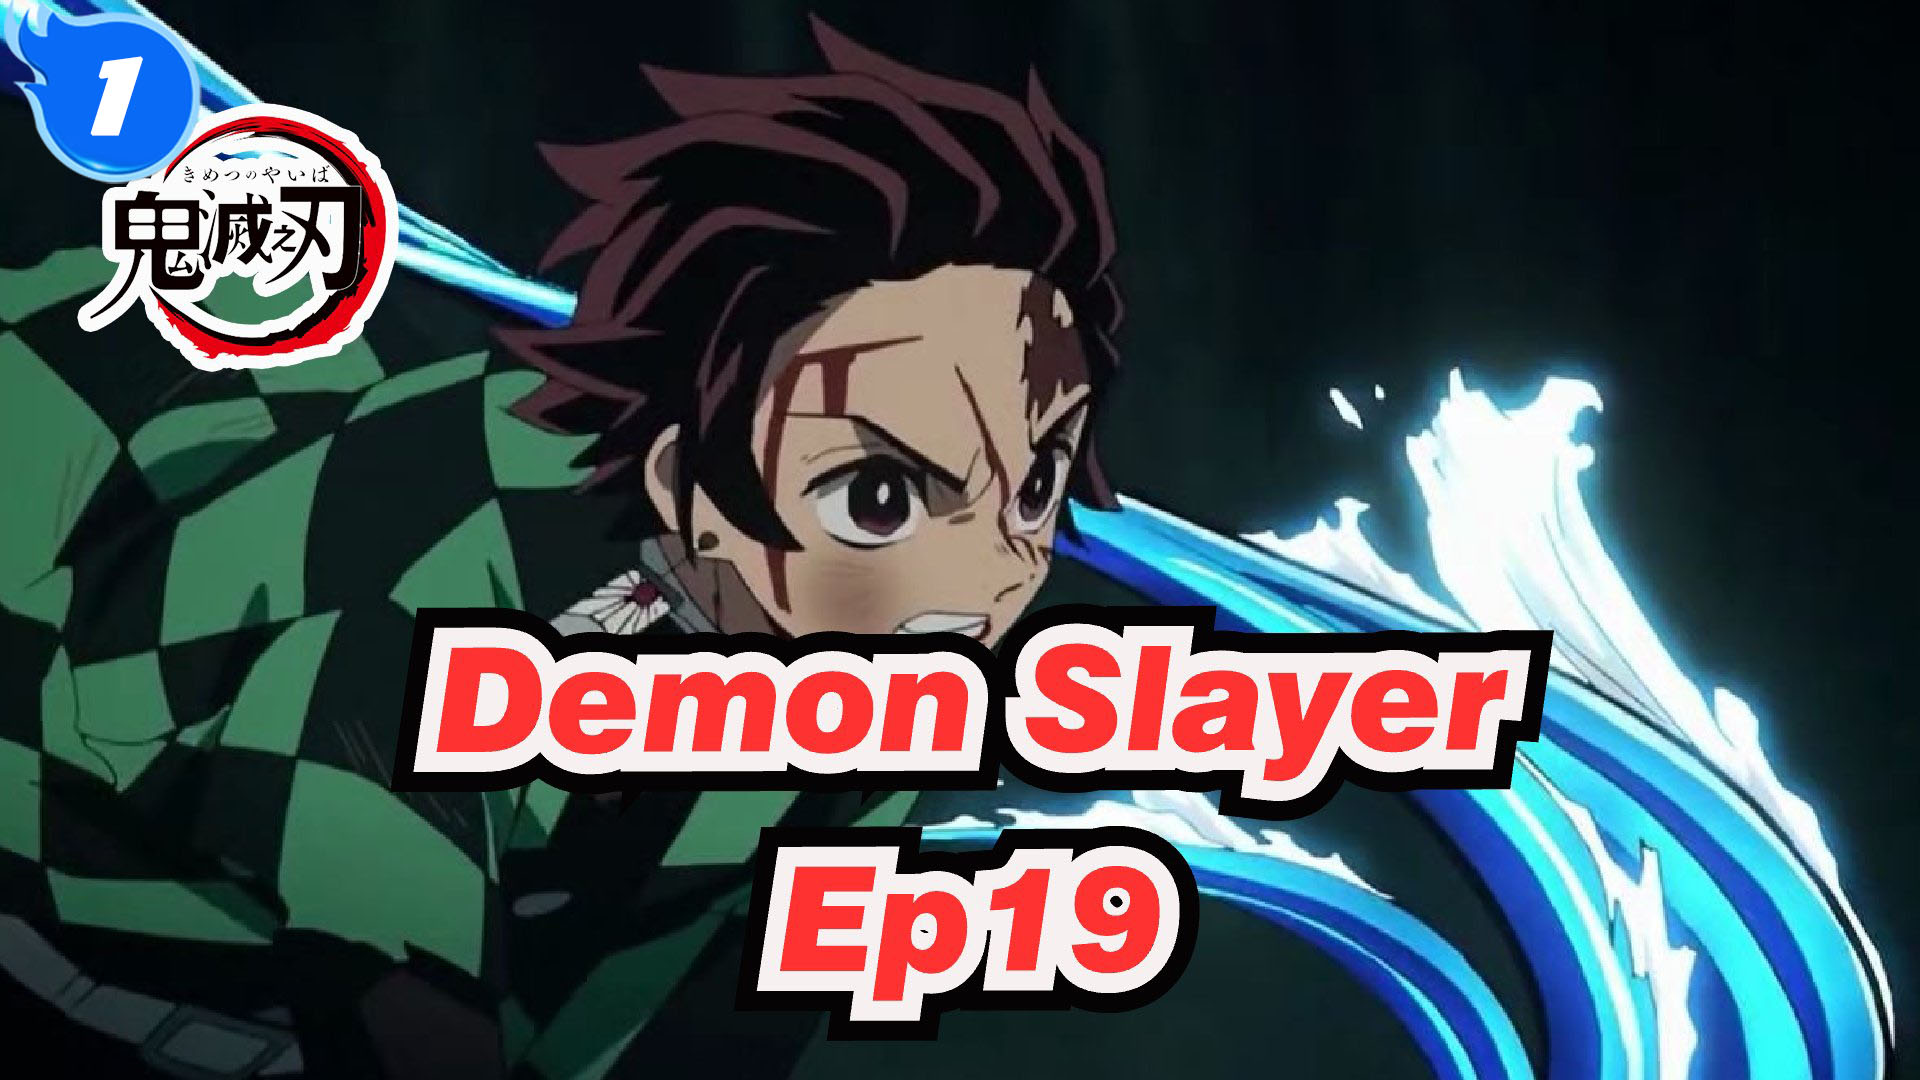 Demon Slayer: Episódio 19 exibe uma das cenas mais ÉPICAS entre os animes  do ano - Combo Infinito